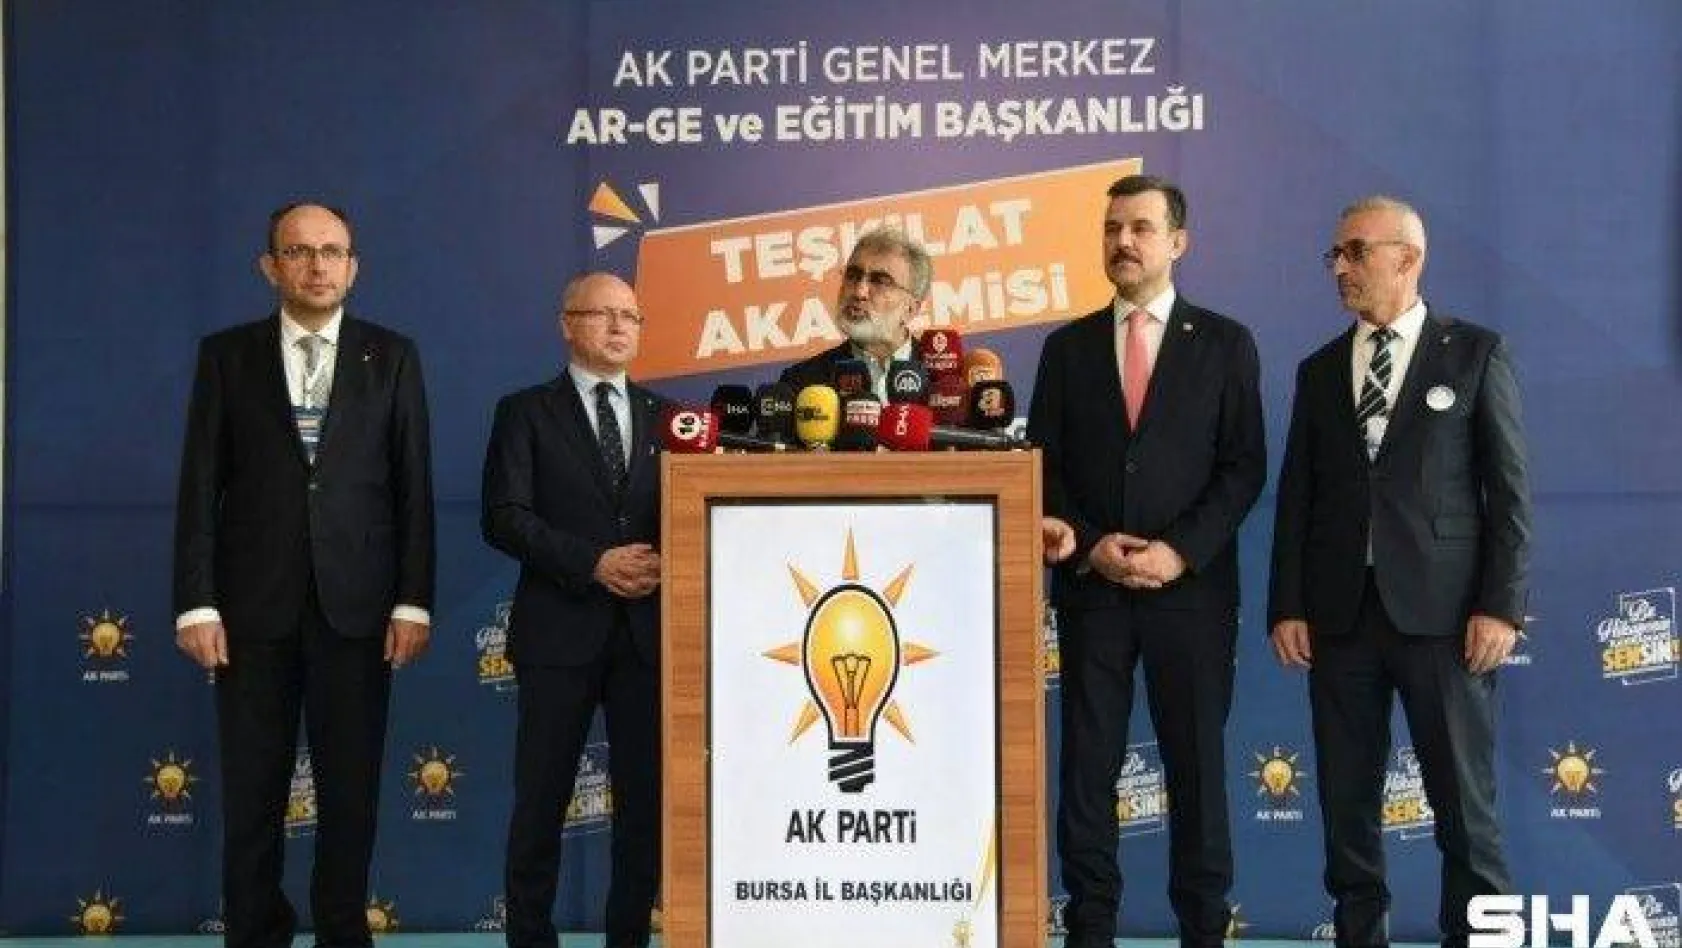 Taner Yıldız: 'Cumhurbaşkanımız Recep Tayyip Erdoğan'la beraber yaptığımız bir ekip çalışmasıdır'